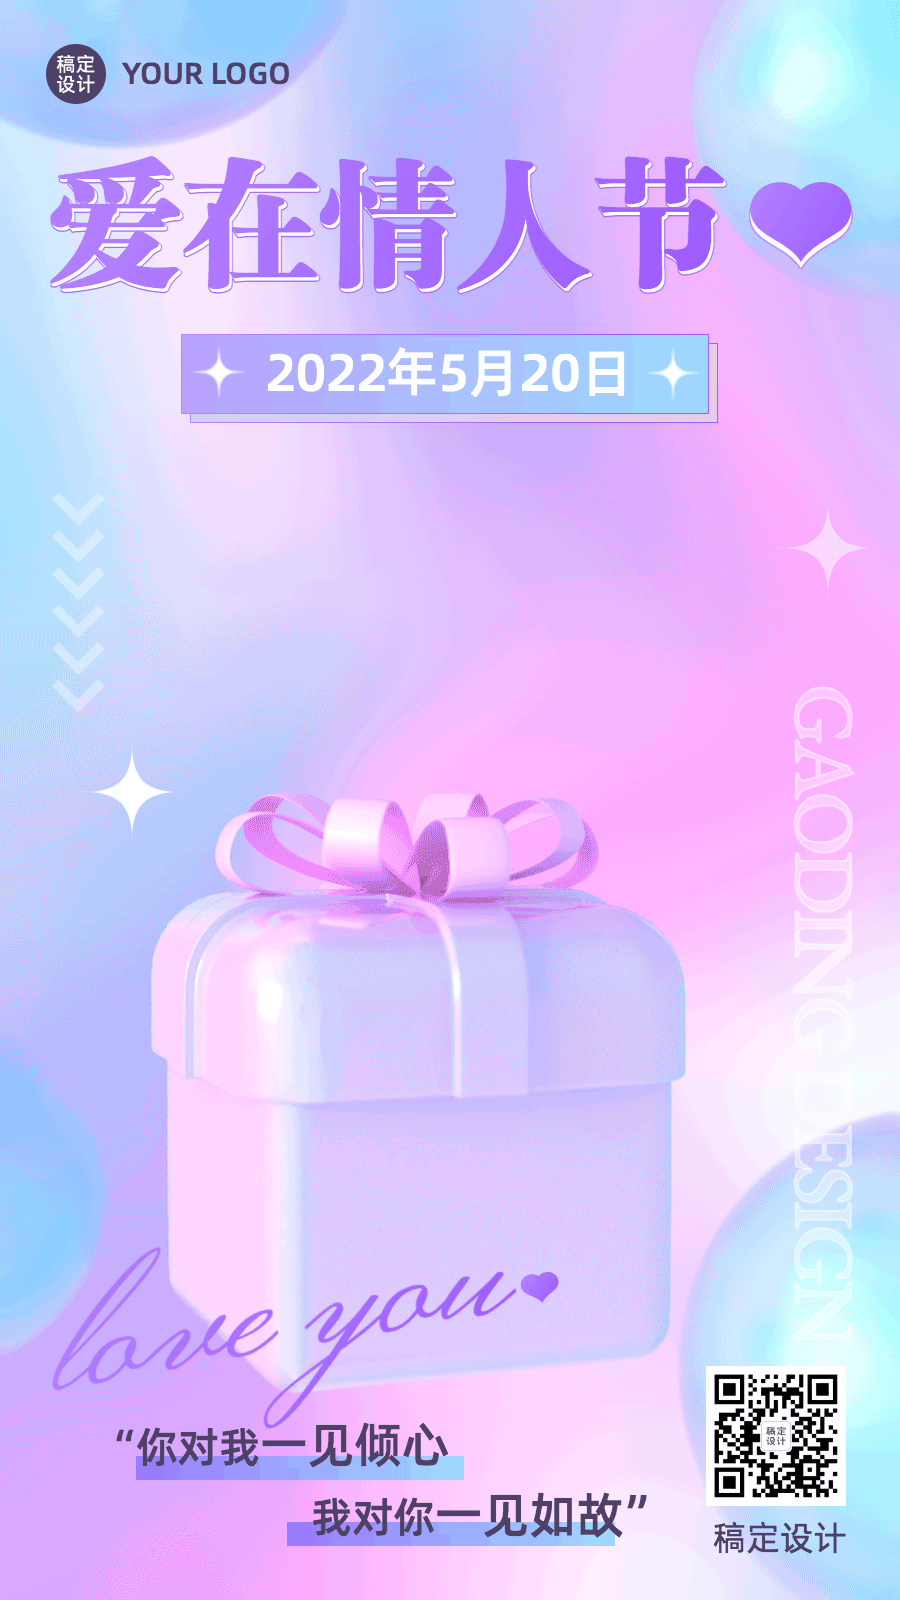 520情人节节日祝福礼物盒动态海报